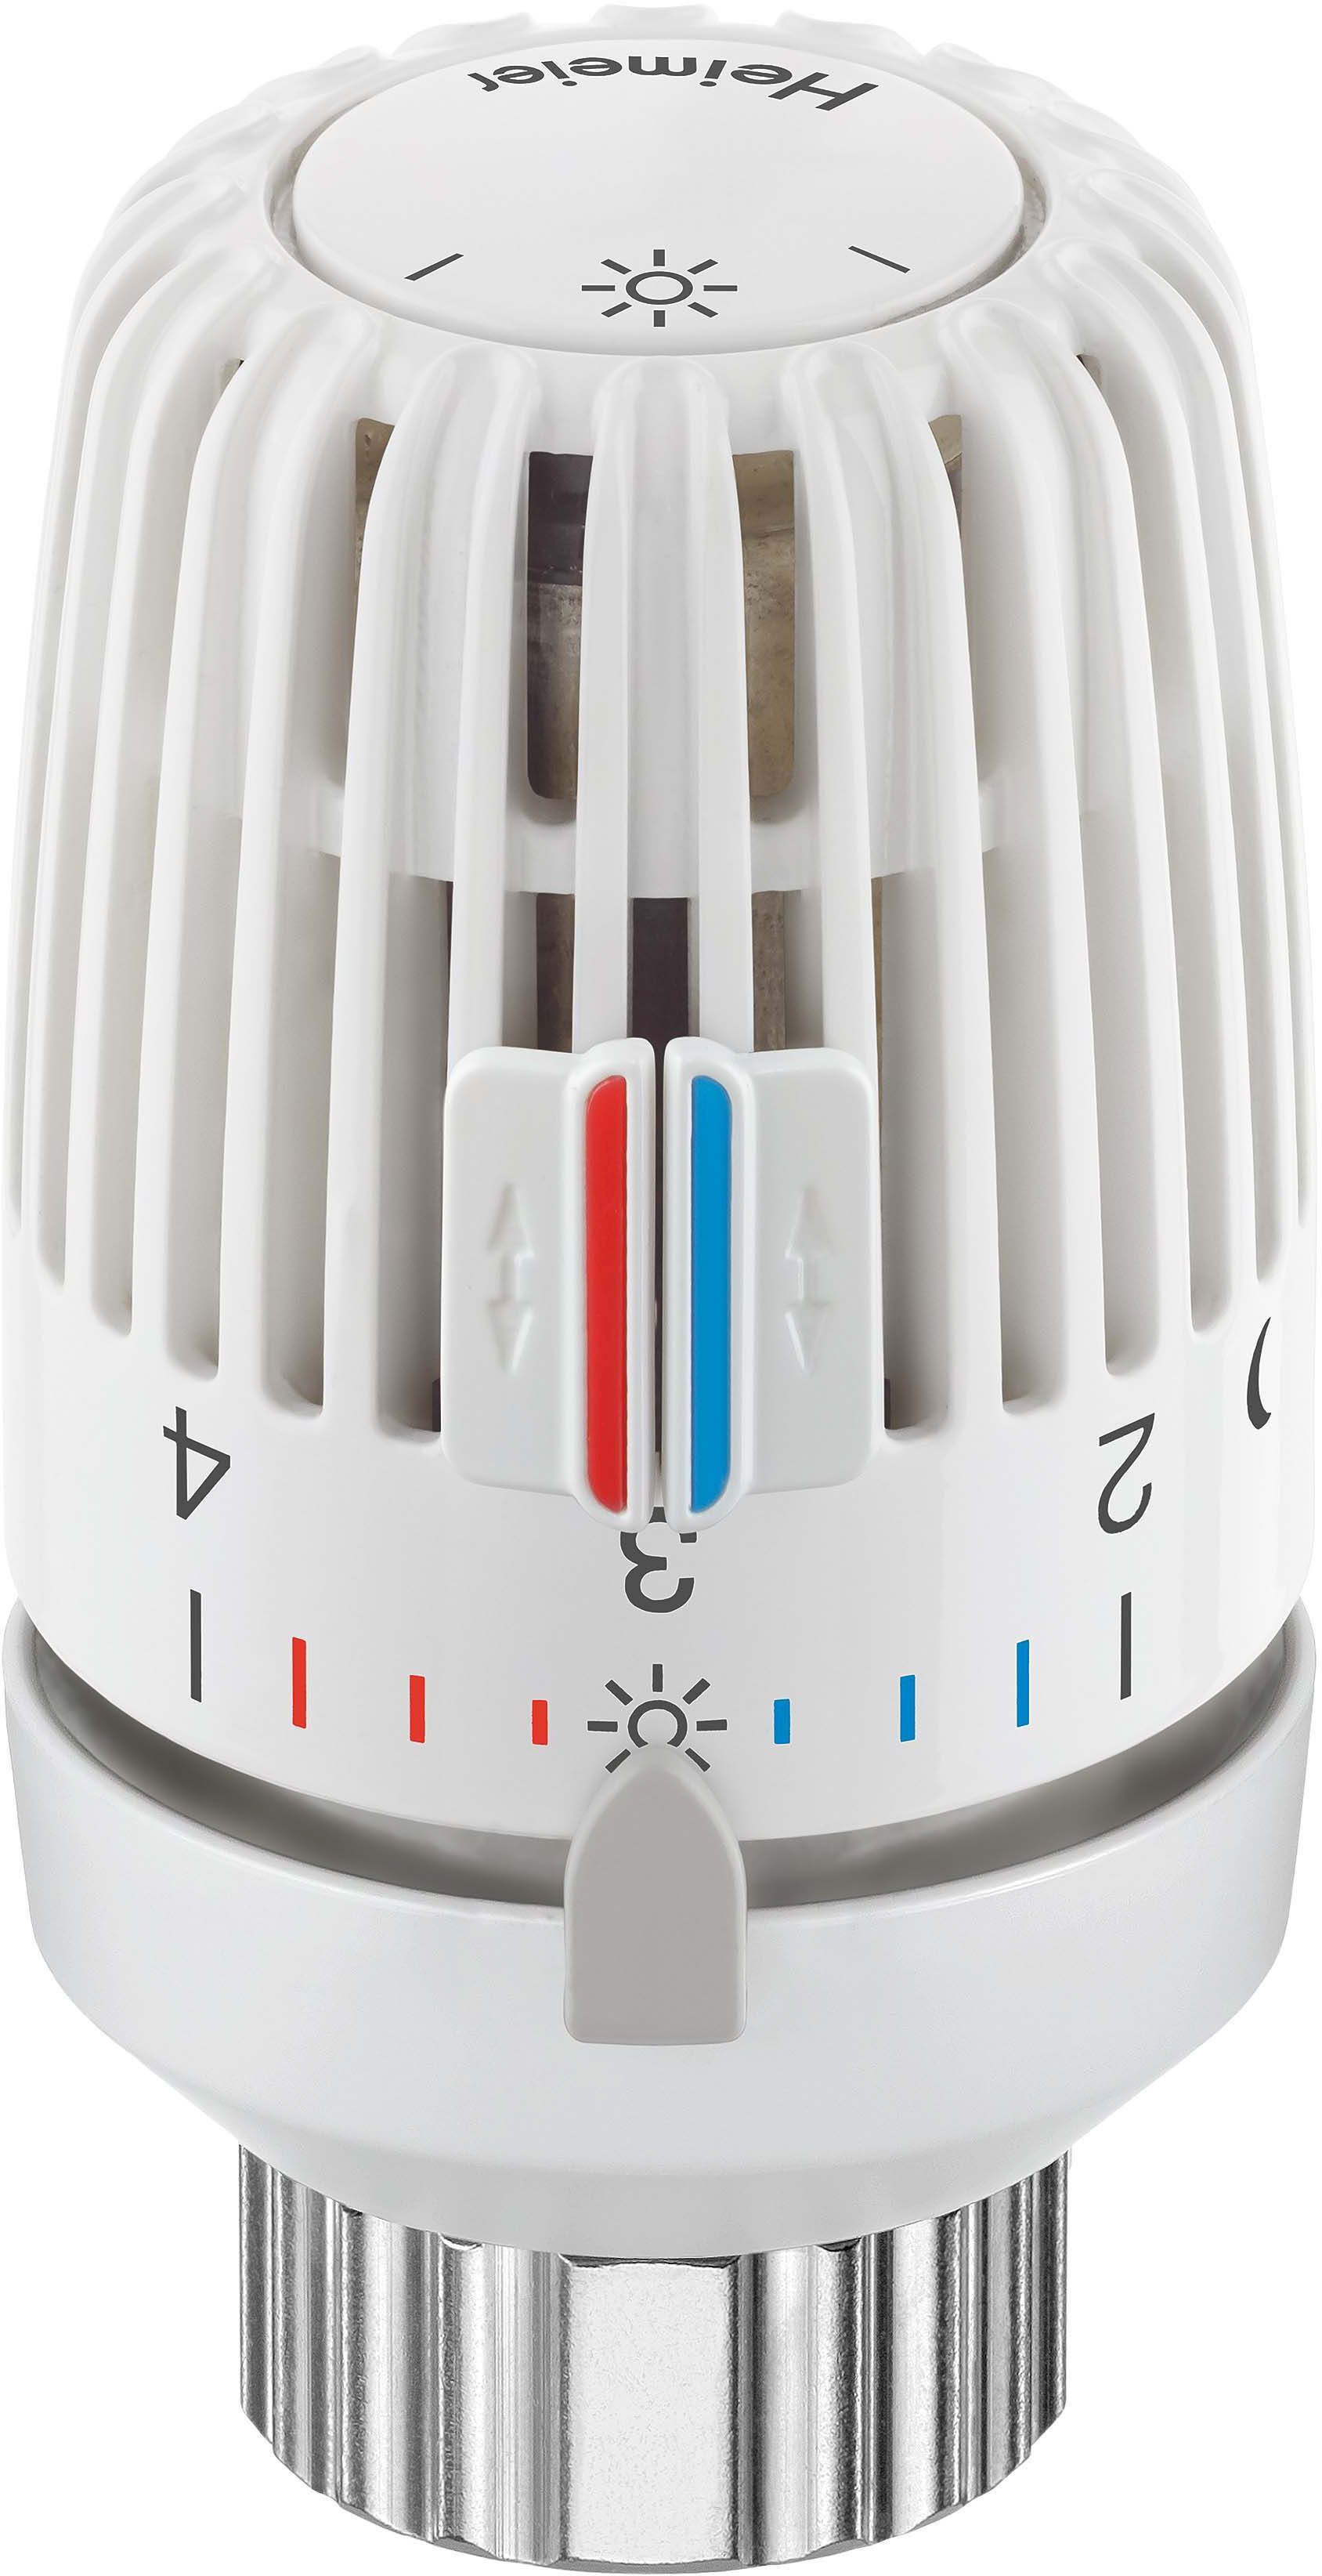 Heimeier Thermostat-Kopf 9710-40.500 mit Diebstahlsicherung, 2 Schrauben, weiß, für Ventilheizkörper